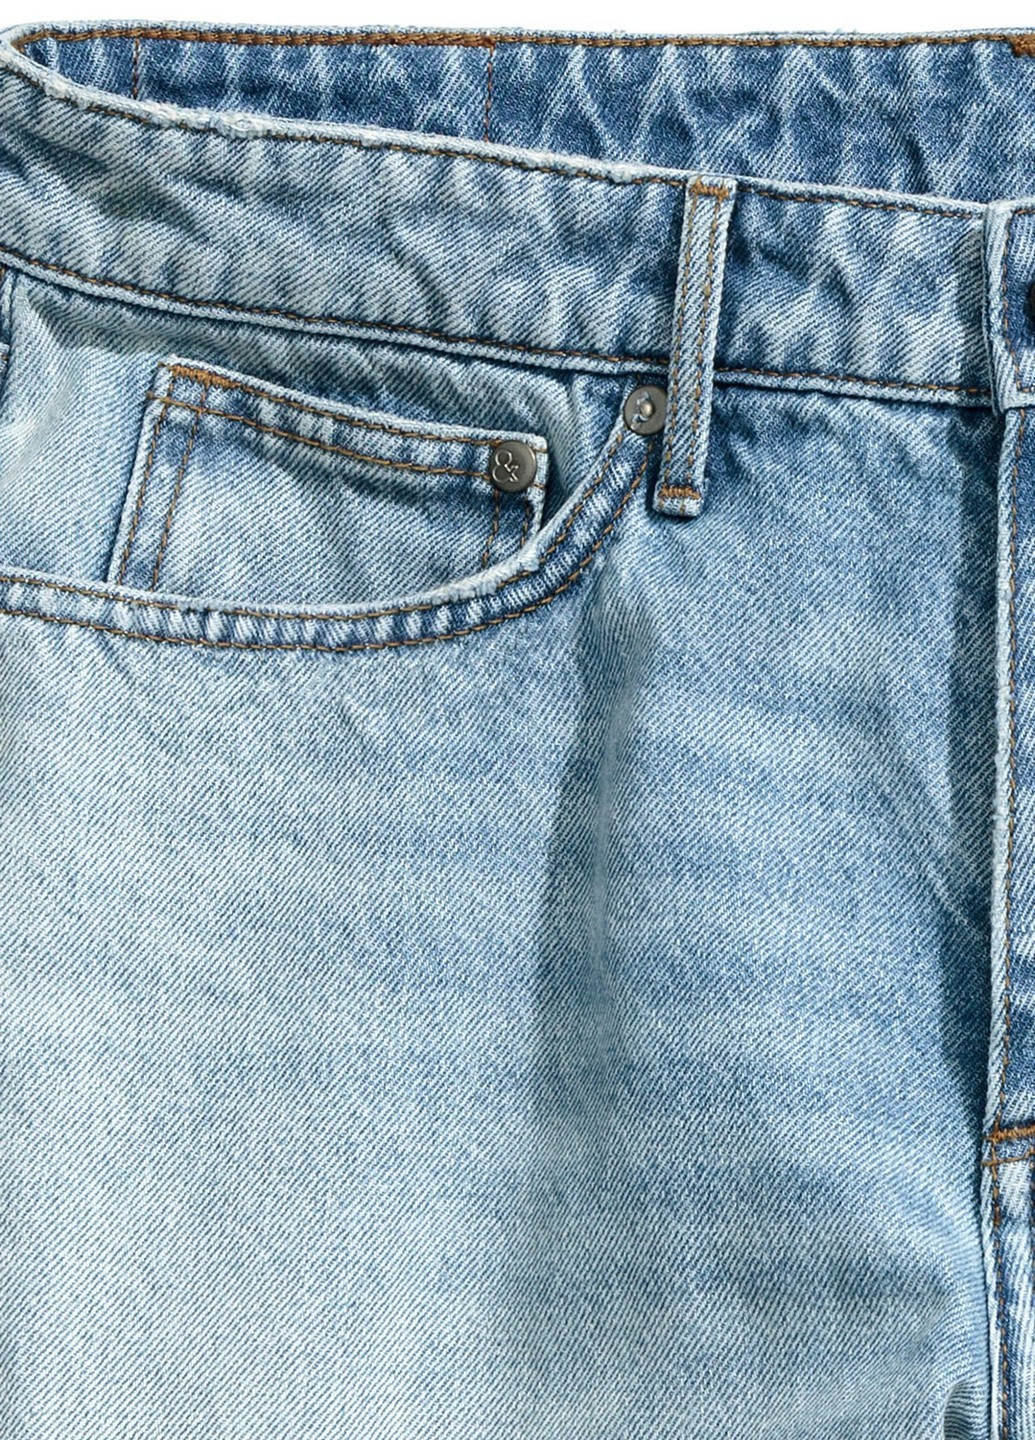 Шорты джинсовые H&M однотонные голубые джинсовые